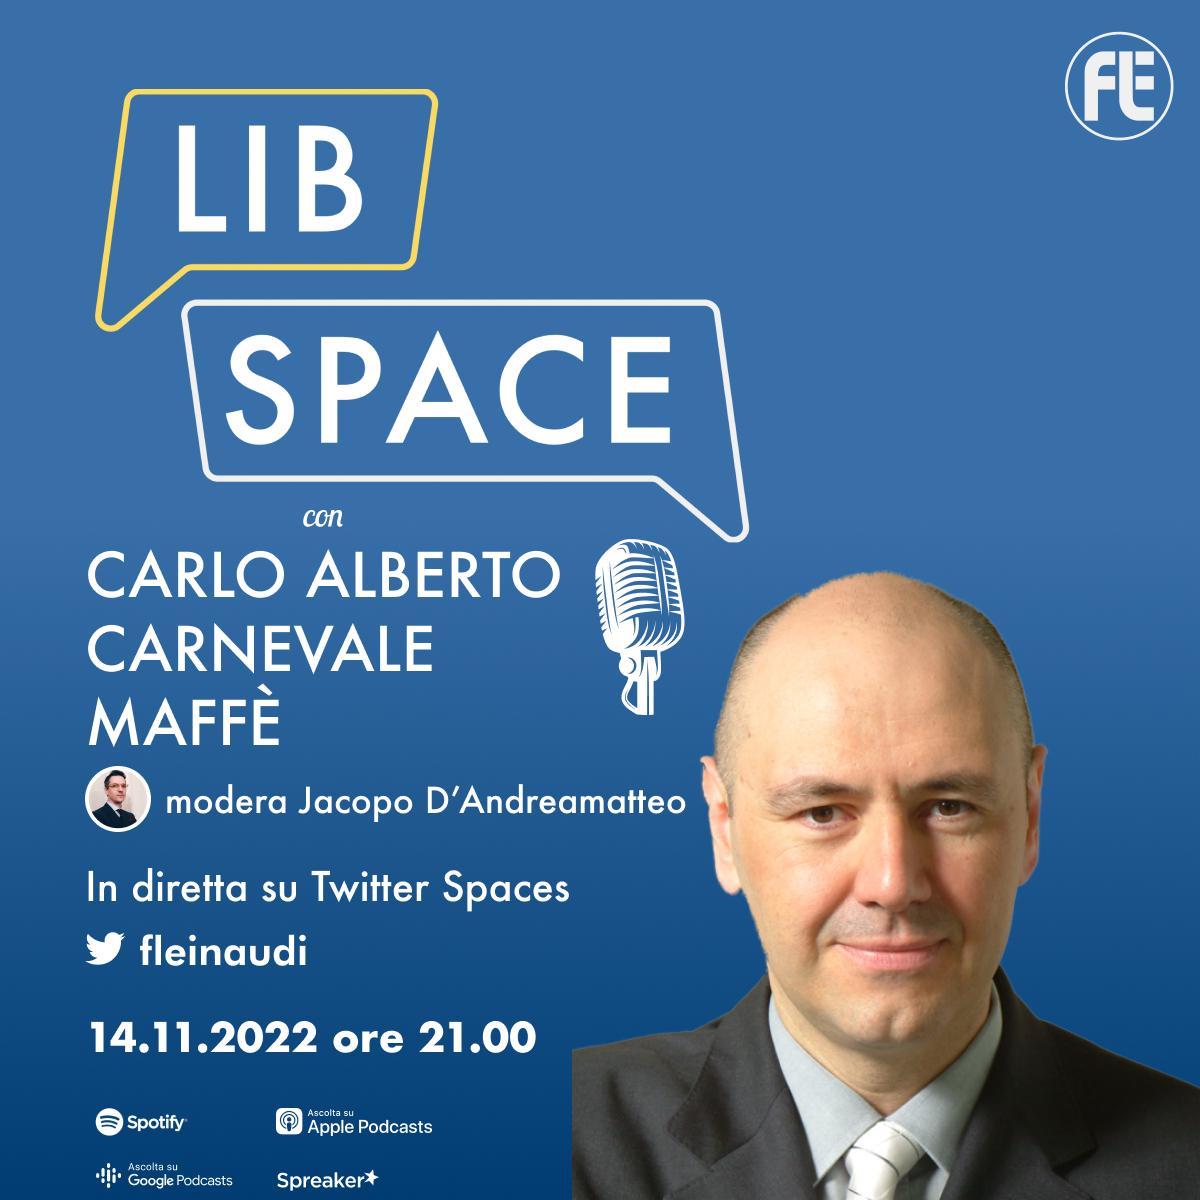 LibSpace con Carlo Alberto Carnevale Maffè